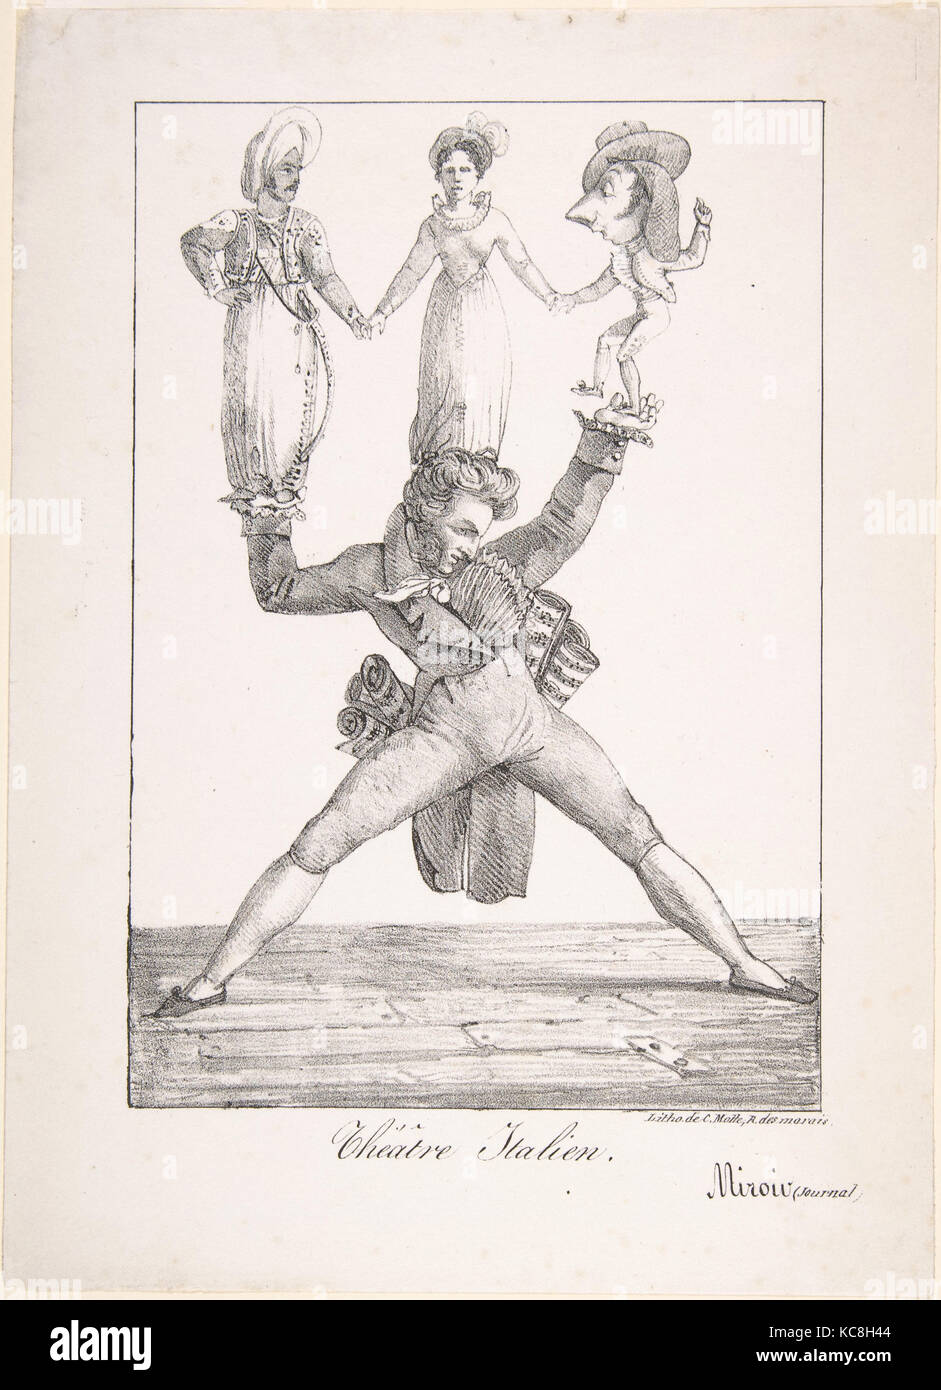 Teatro italiano, 1821, litografia su carta intessuta; solo membro, foglio: 10 1/16 x 7 5/16 in. (25,6 x 18,6 cm), stampe, Eugène Foto Stock